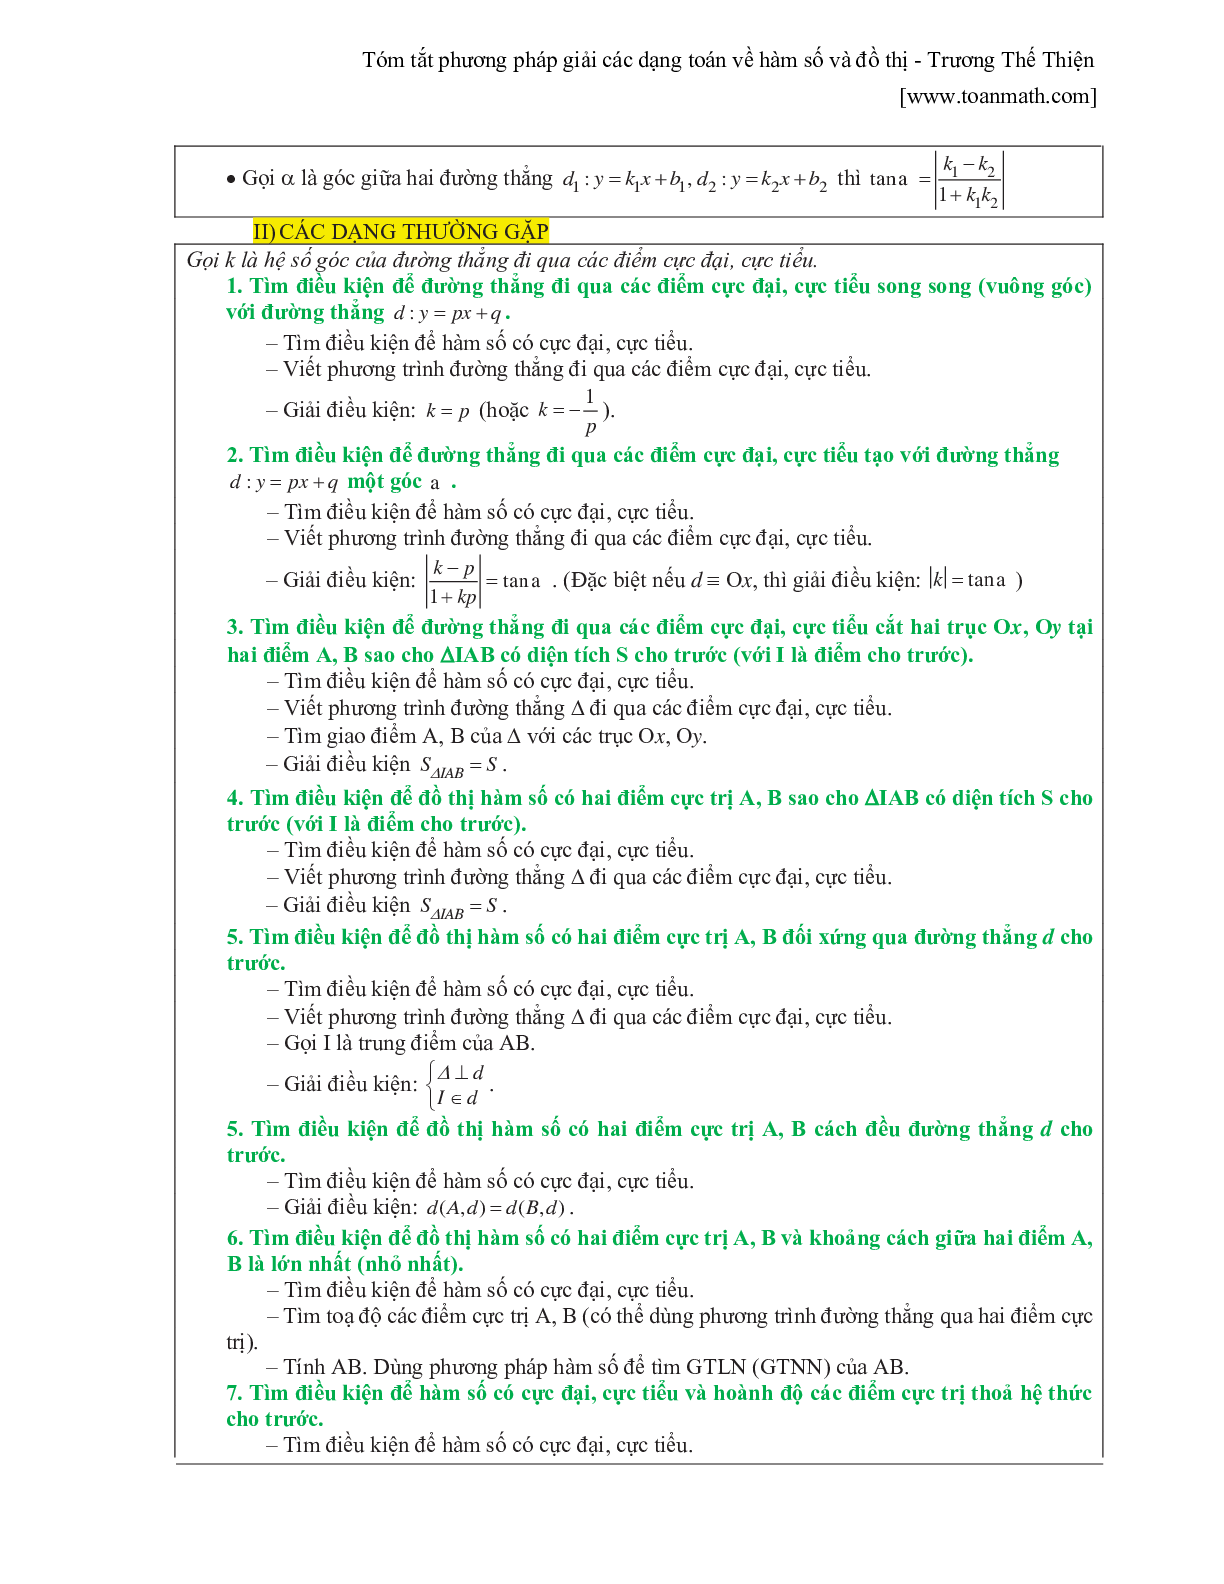 Tóm tắt phương pháp giải các dạng toán về hàm số và đồ thị (trang 4)